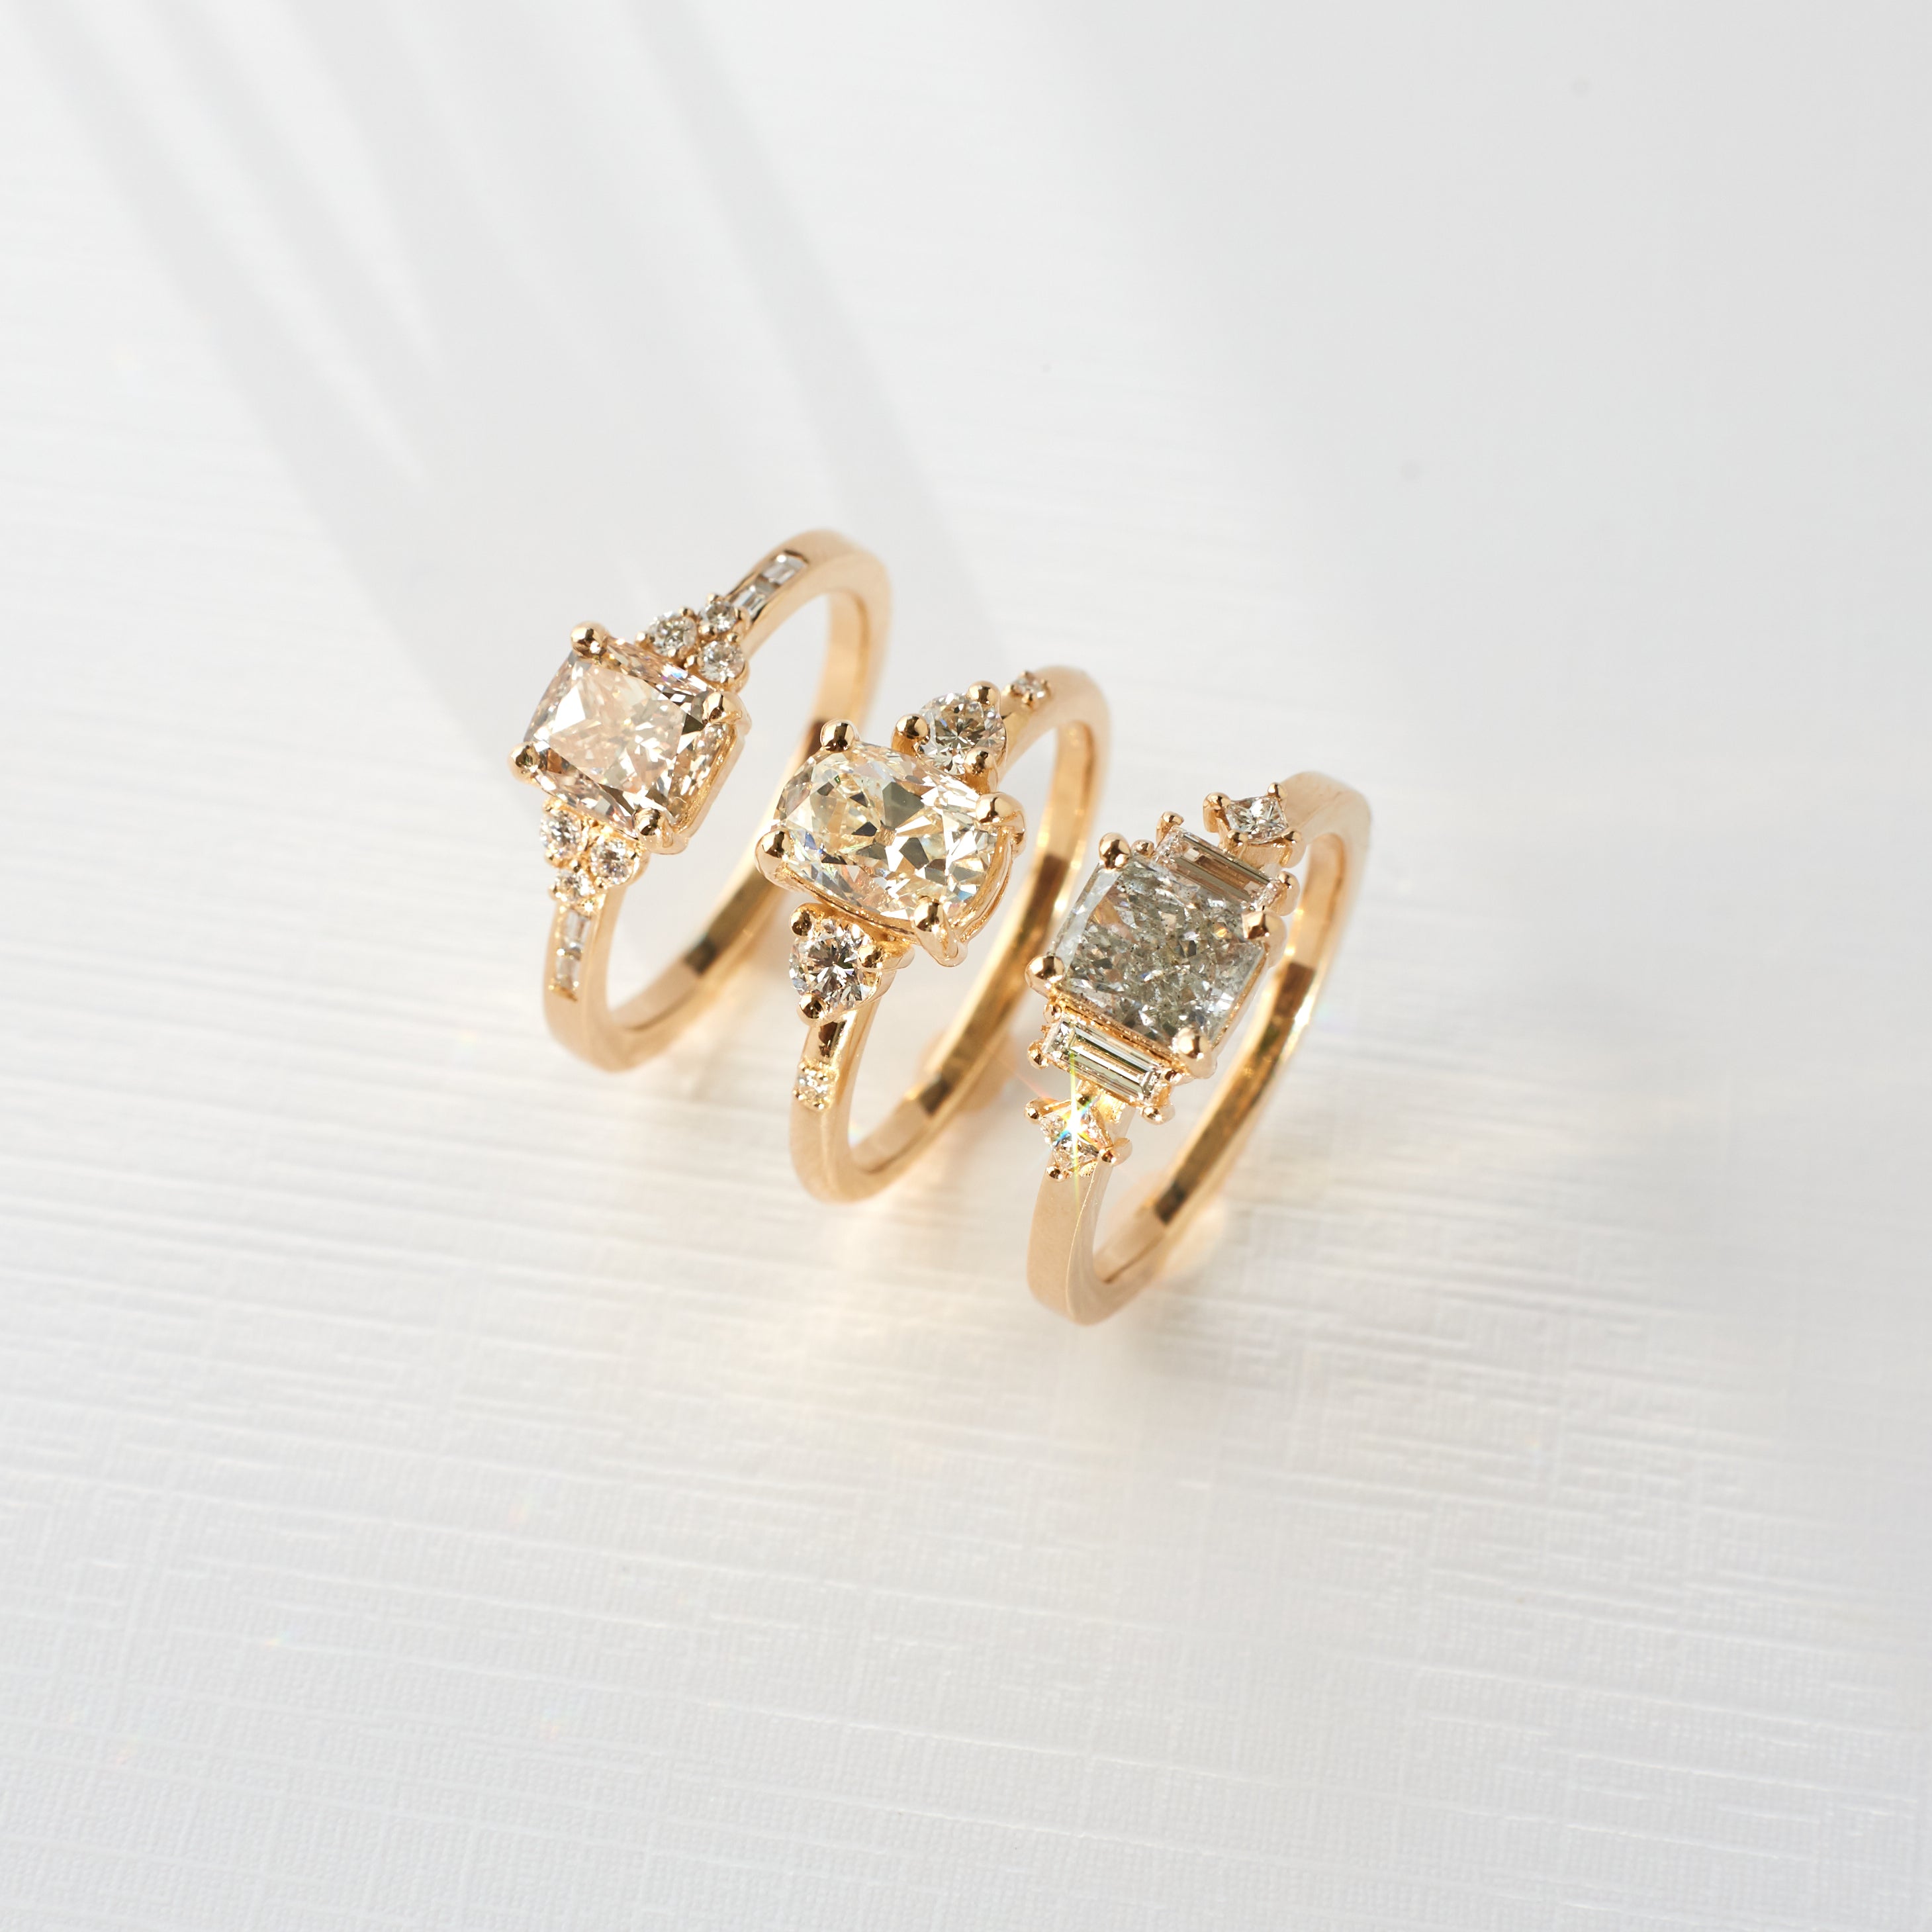 Clio Ring - 1.16 carat Modern Old Mine Cut Diamond